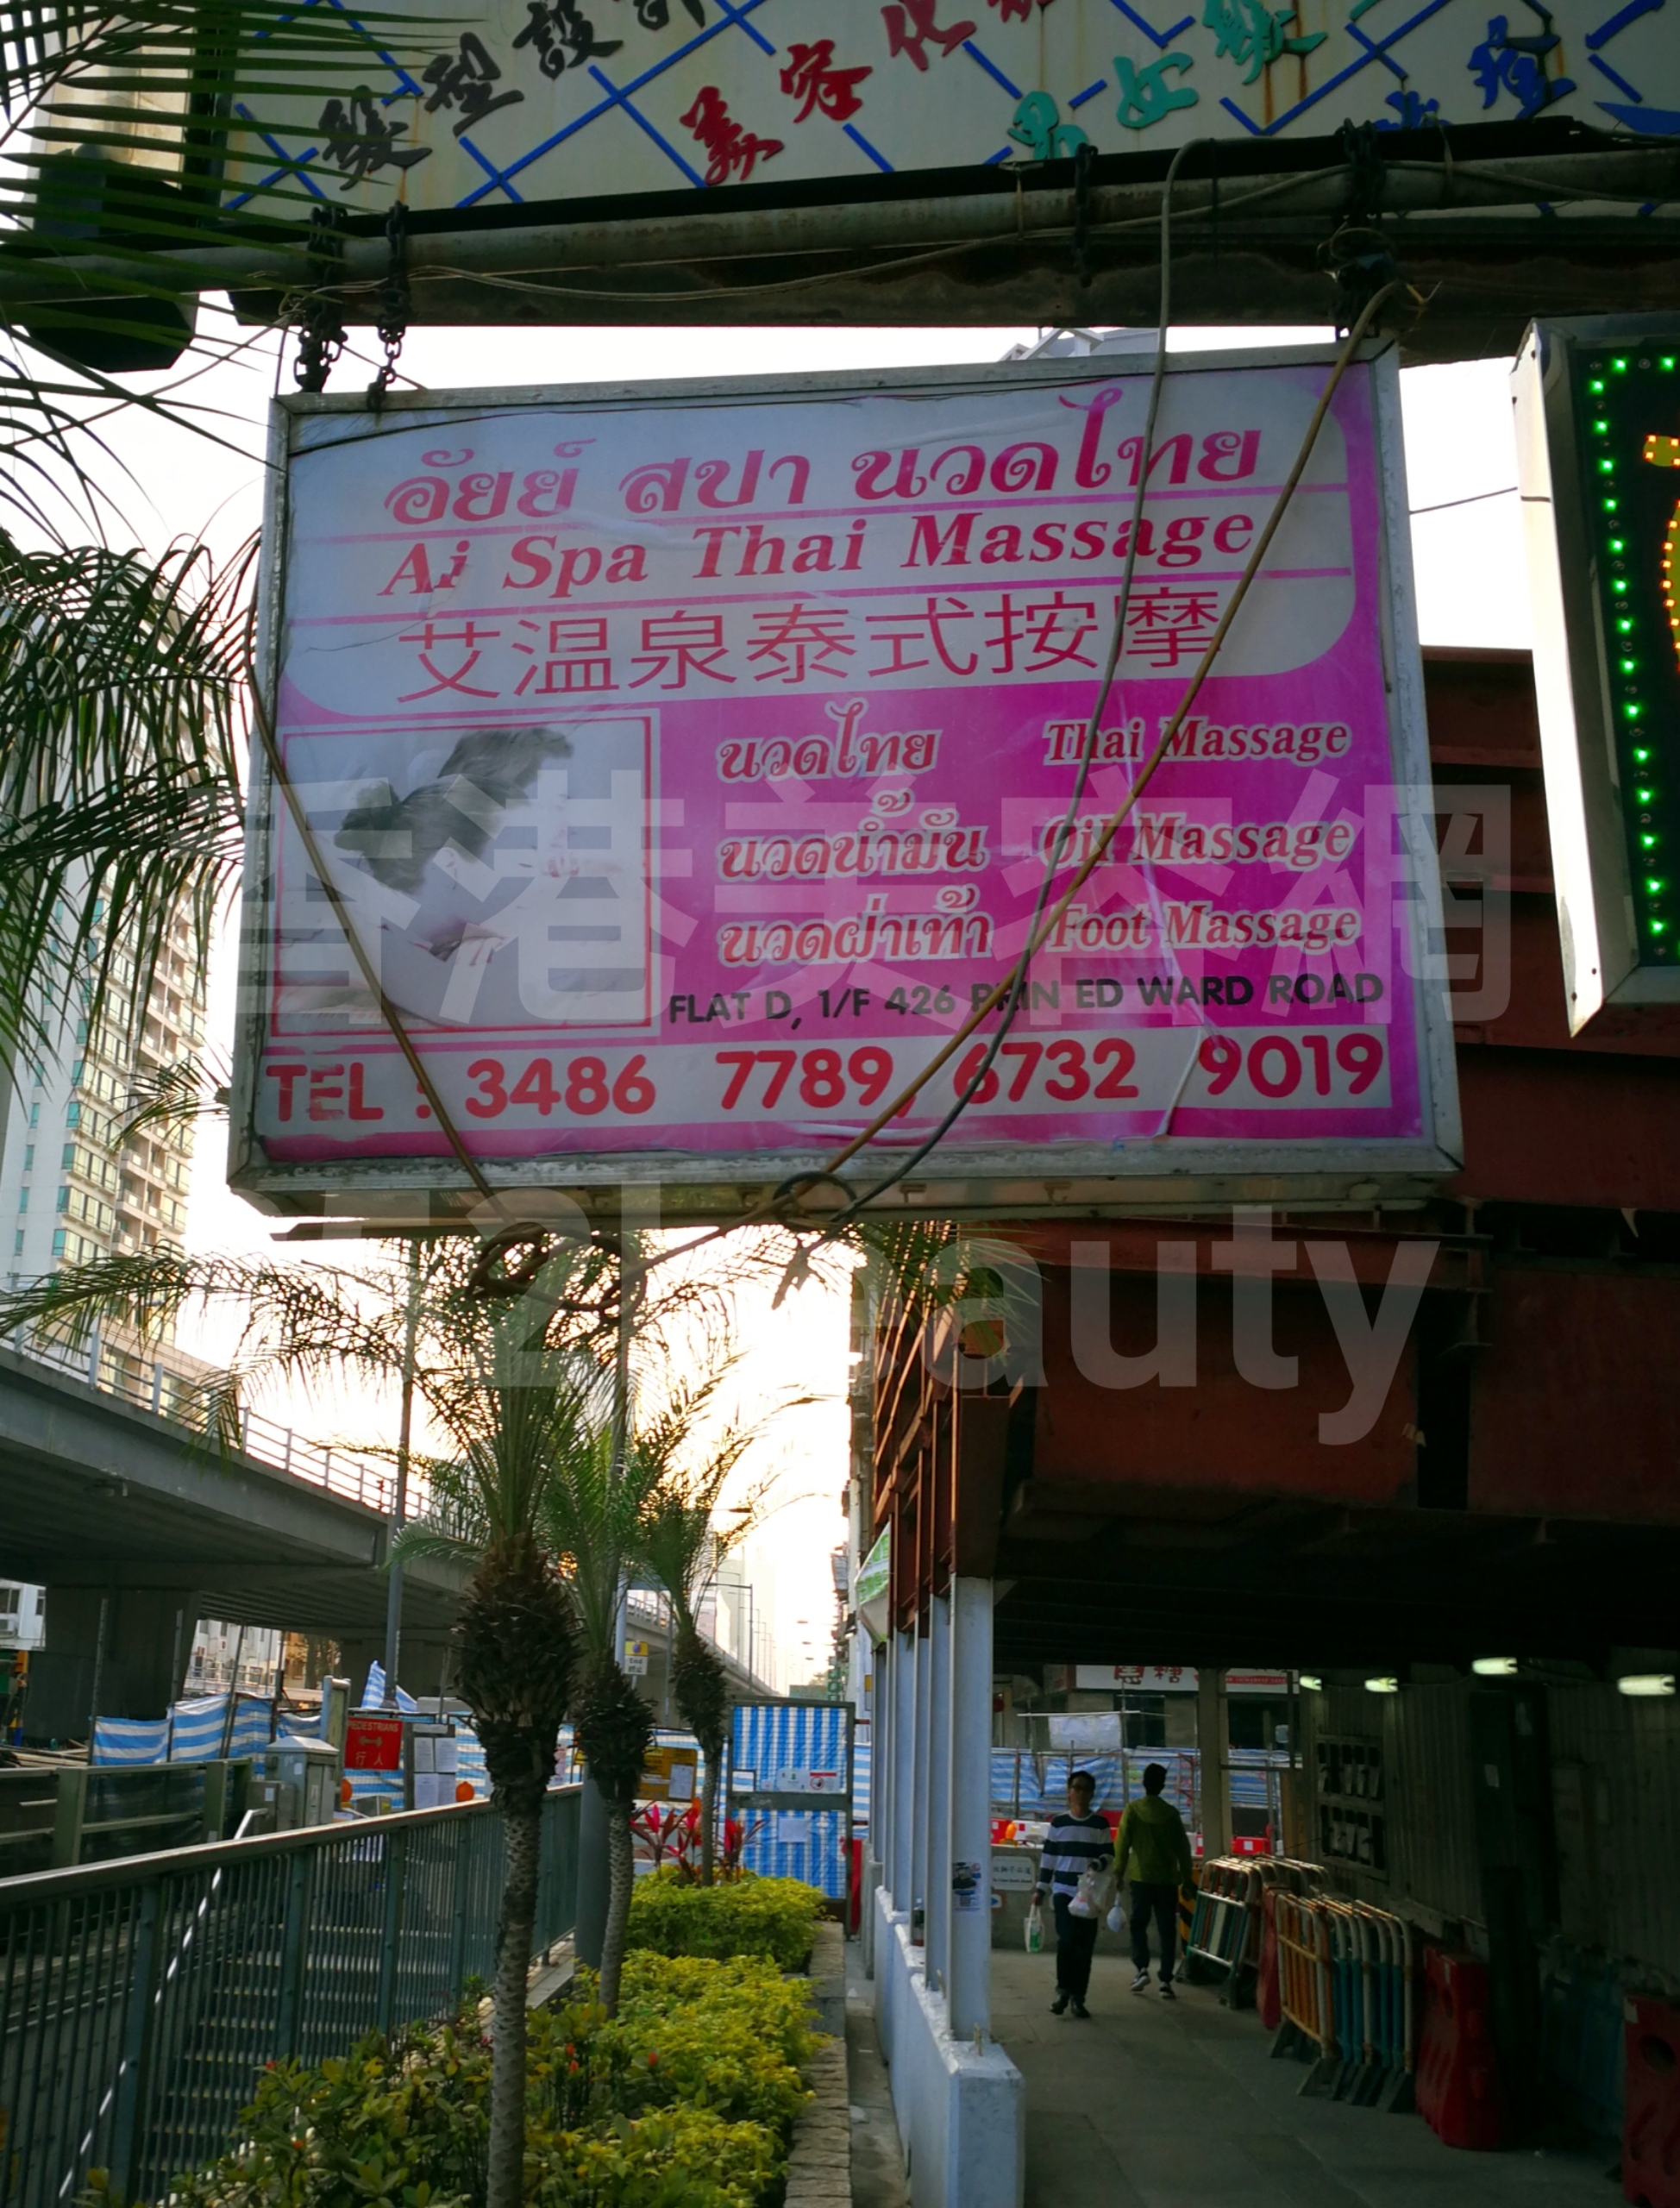 Hong Kong Beauty Salon Beauty Salon / Beautician: 艾溫泉泰式按摩